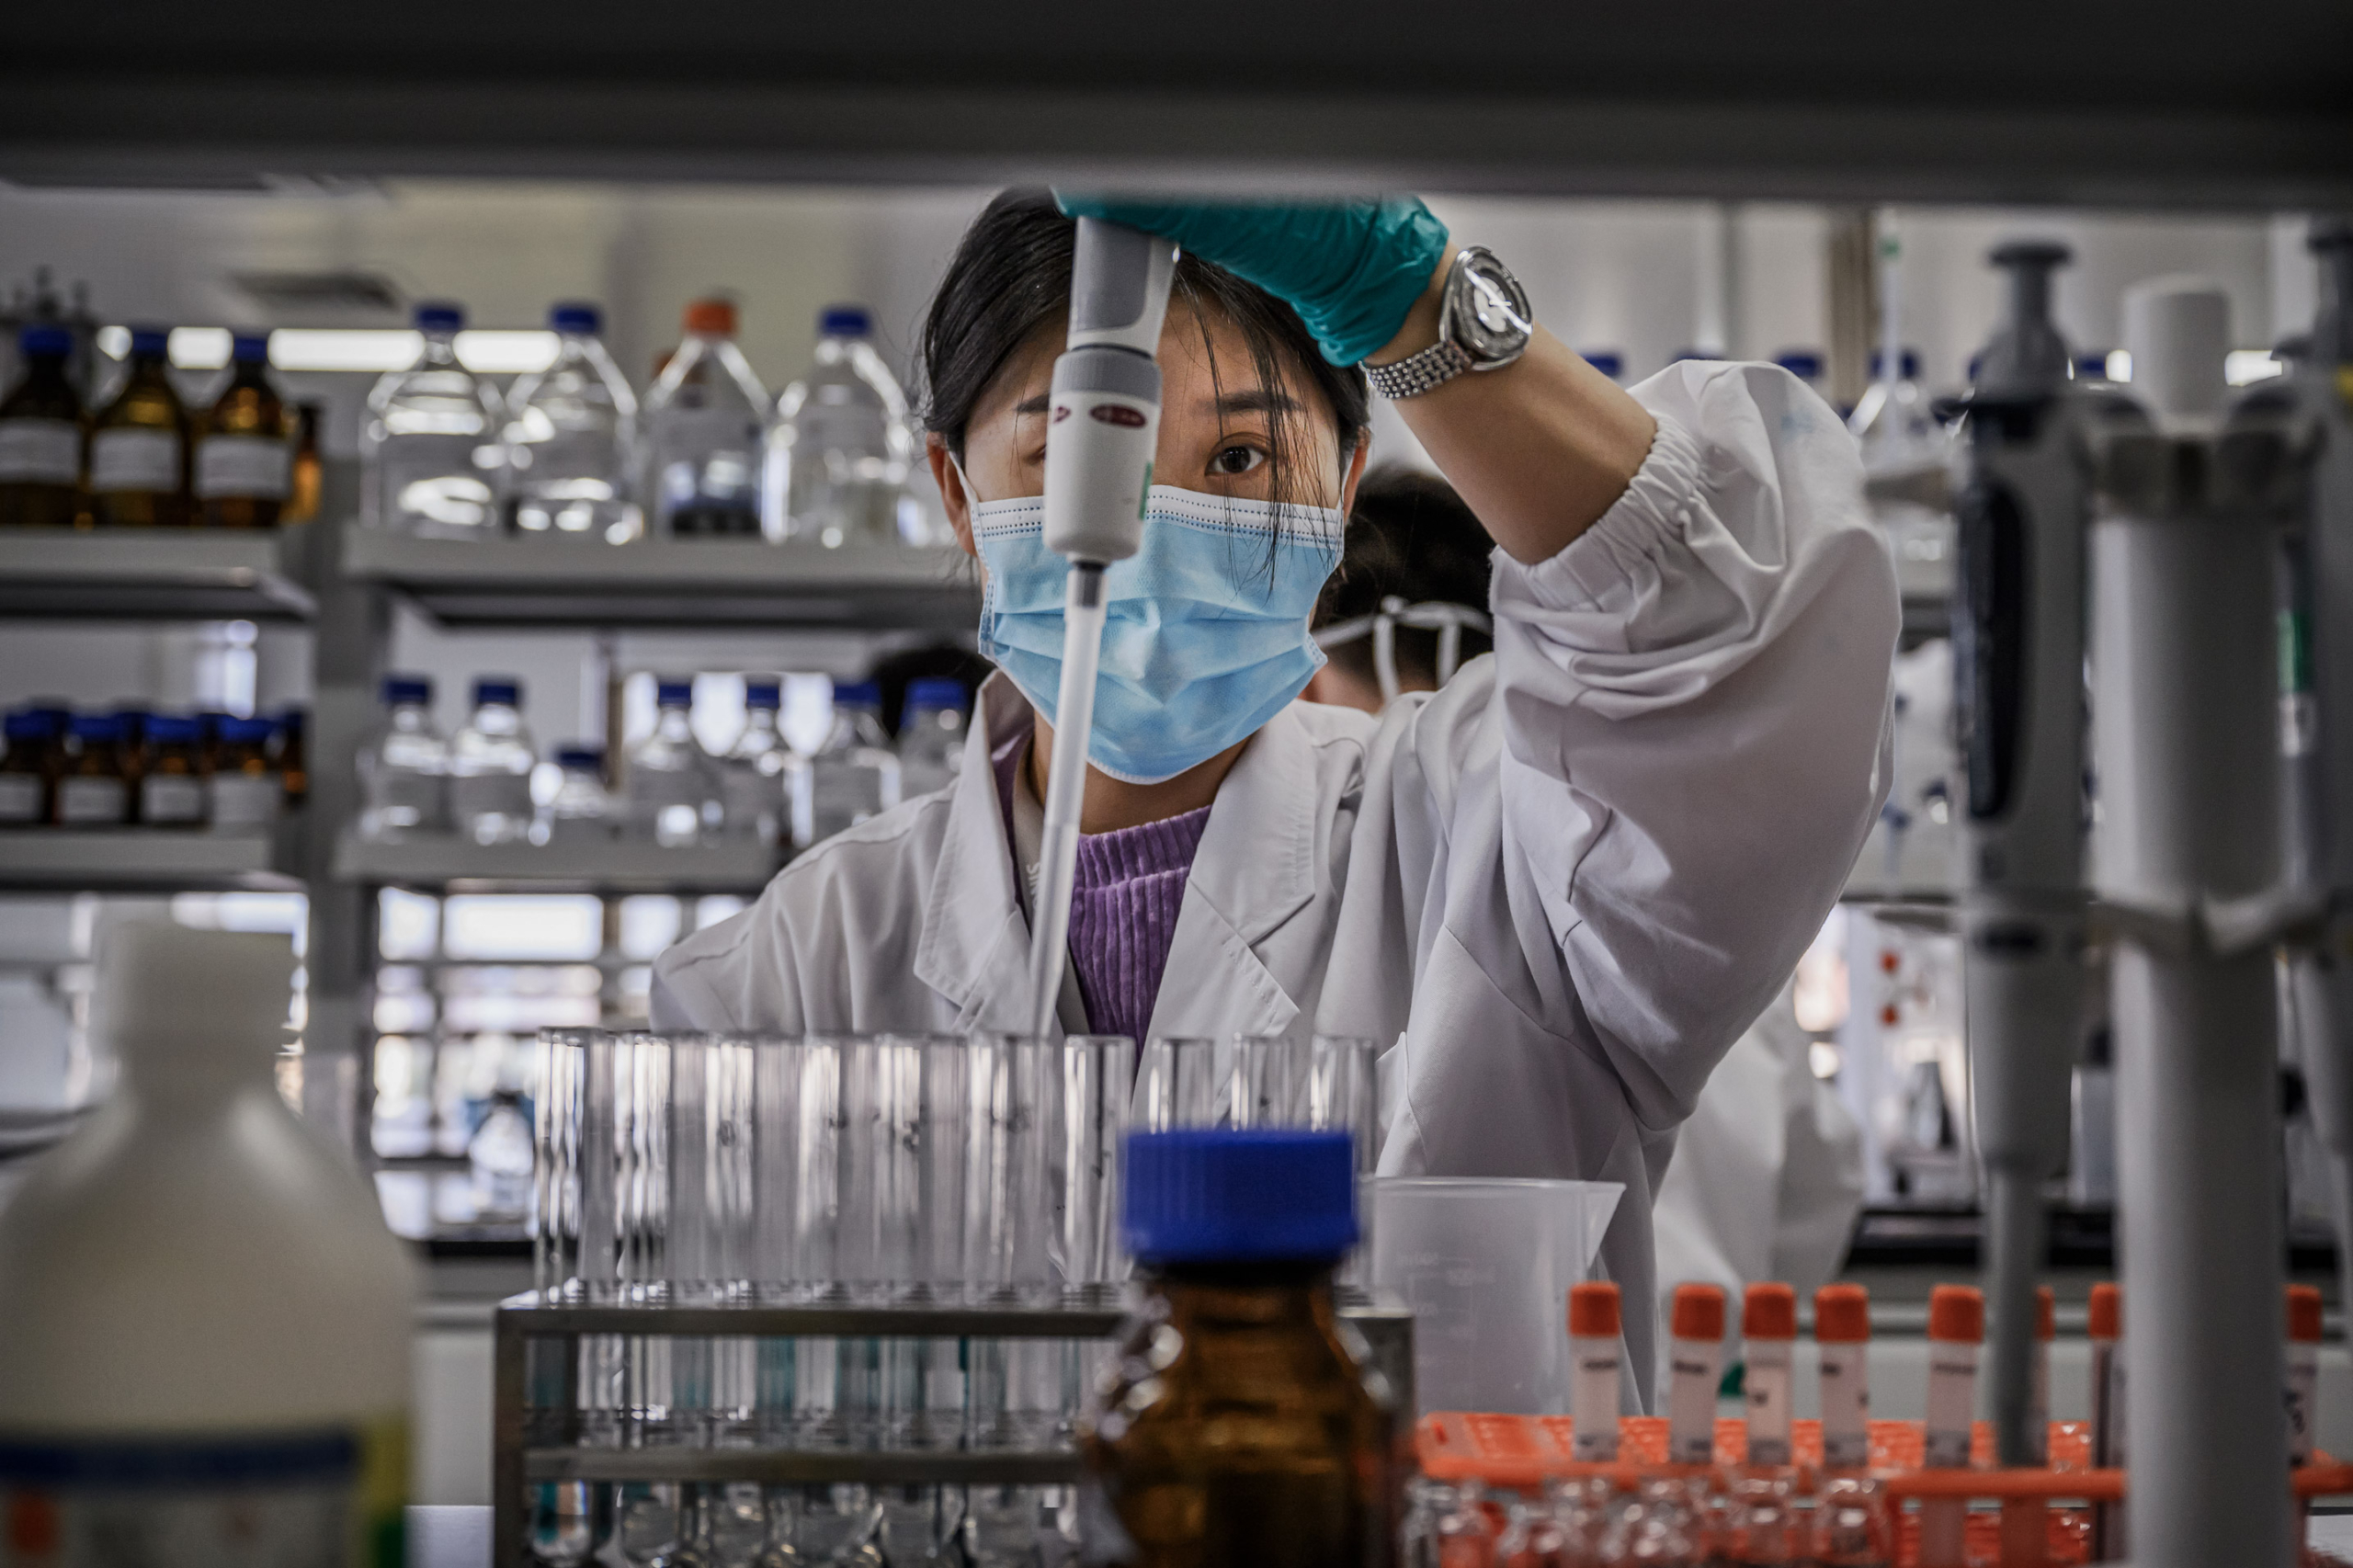 Một kỹ thuật viên làm việc trong một phòng thí nghiệm tại Sinovac Biotech, nơi công ty này sản xuất vaccine có tiềm năng chống COVID-19, CoronaVac, tại Bắc Kinh vào ngày 24/09/2020. (Ảnh: Kevin Frayer/Getty Images)